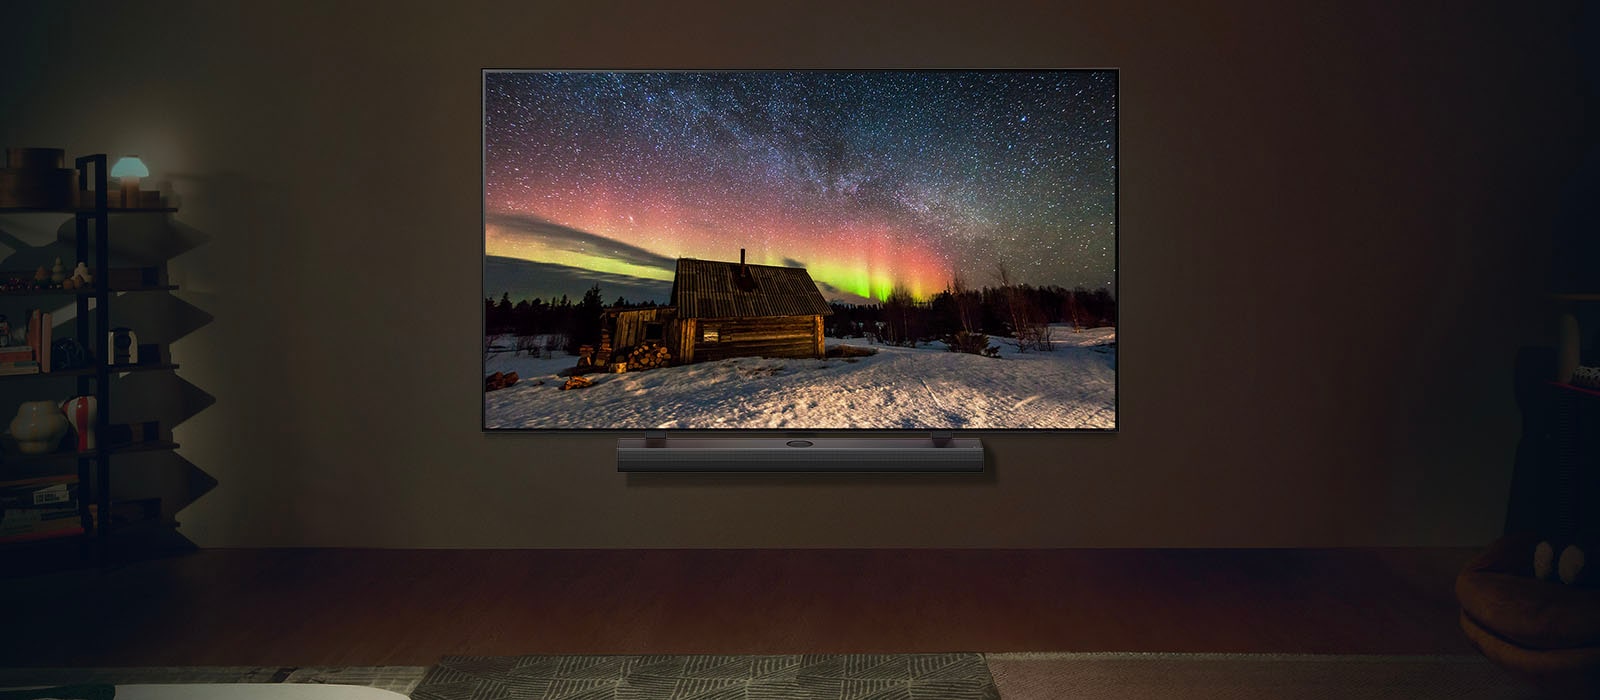 LG TV ir LG garso juosta modernioje gyvenamojoje patalpoje nakties metu. Poliarinės pašvaistės vaizdas ekrane rodomas idealiu ryškumo lygiu.